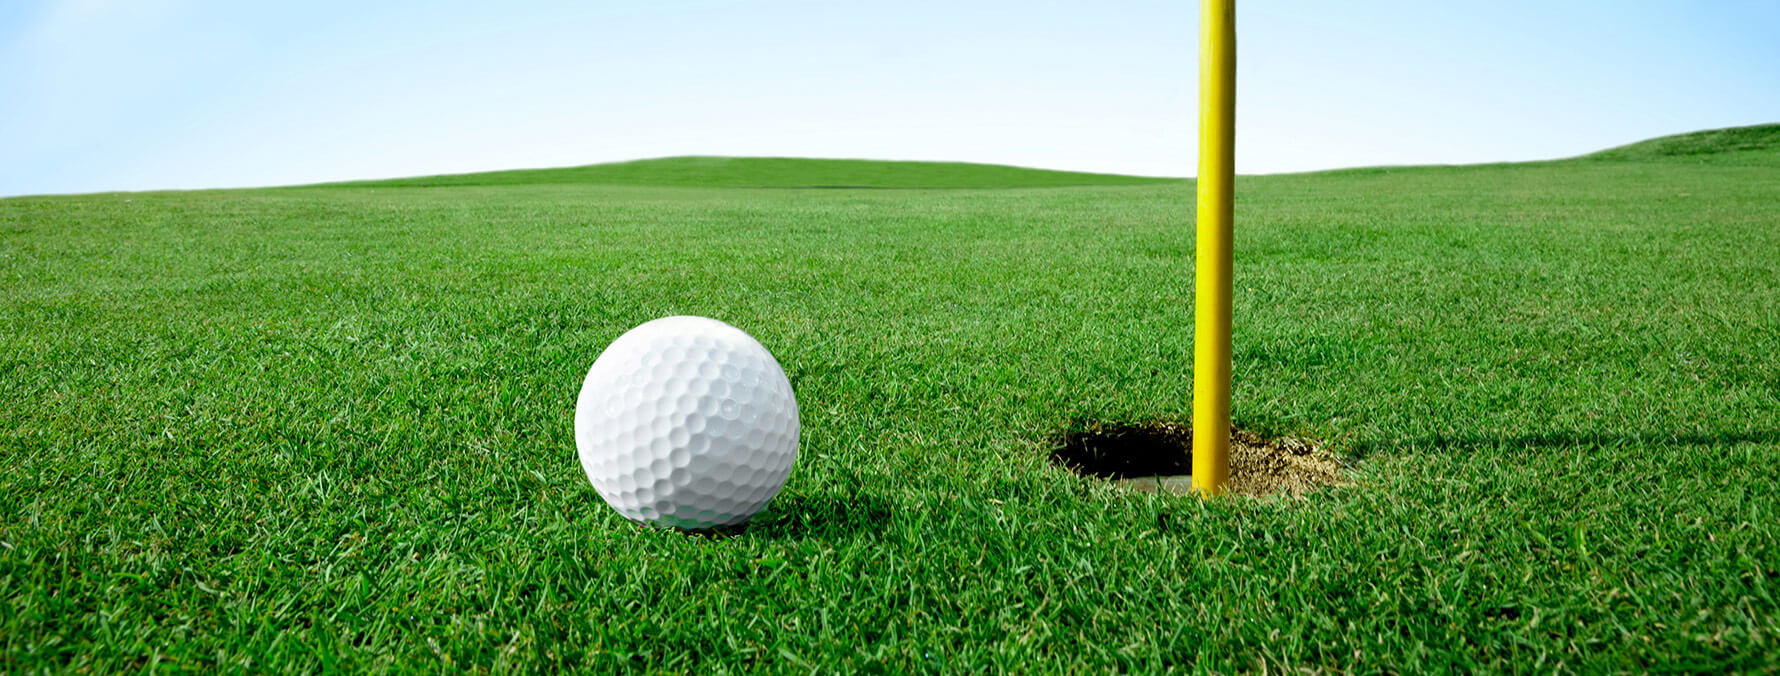 golf-course-turf-ornamental